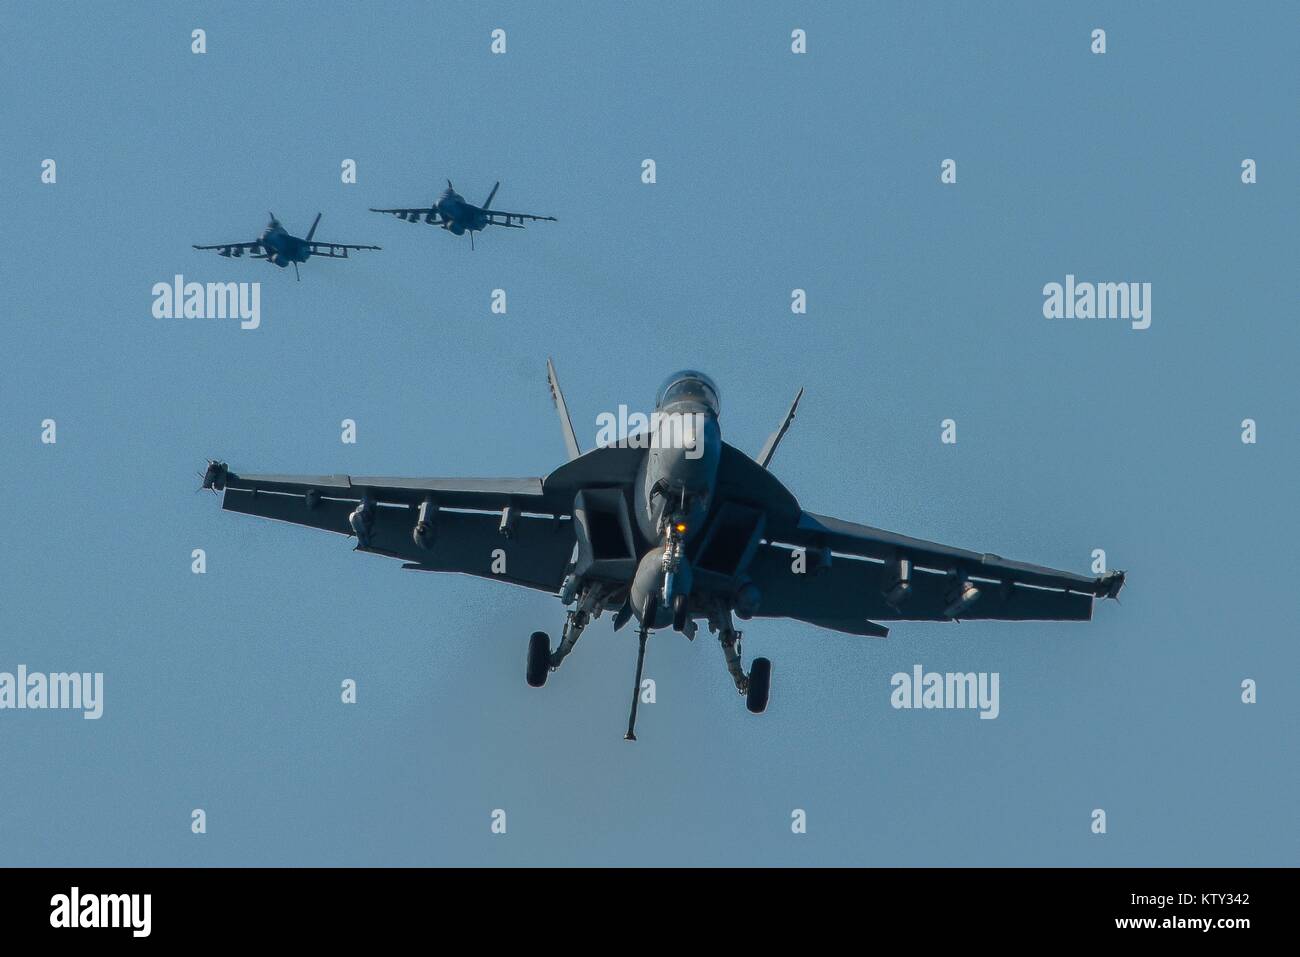 Un U.S. Navy F/A-18F Super Hornet jet fighter aircraft se prépare à atterrir sur le poste de pilotage de la marine américaine de classe Nimitz porte-avions USS Theodore Roosevelt, 17 décembre 2017 dans la région du Golfe. Banque D'Images